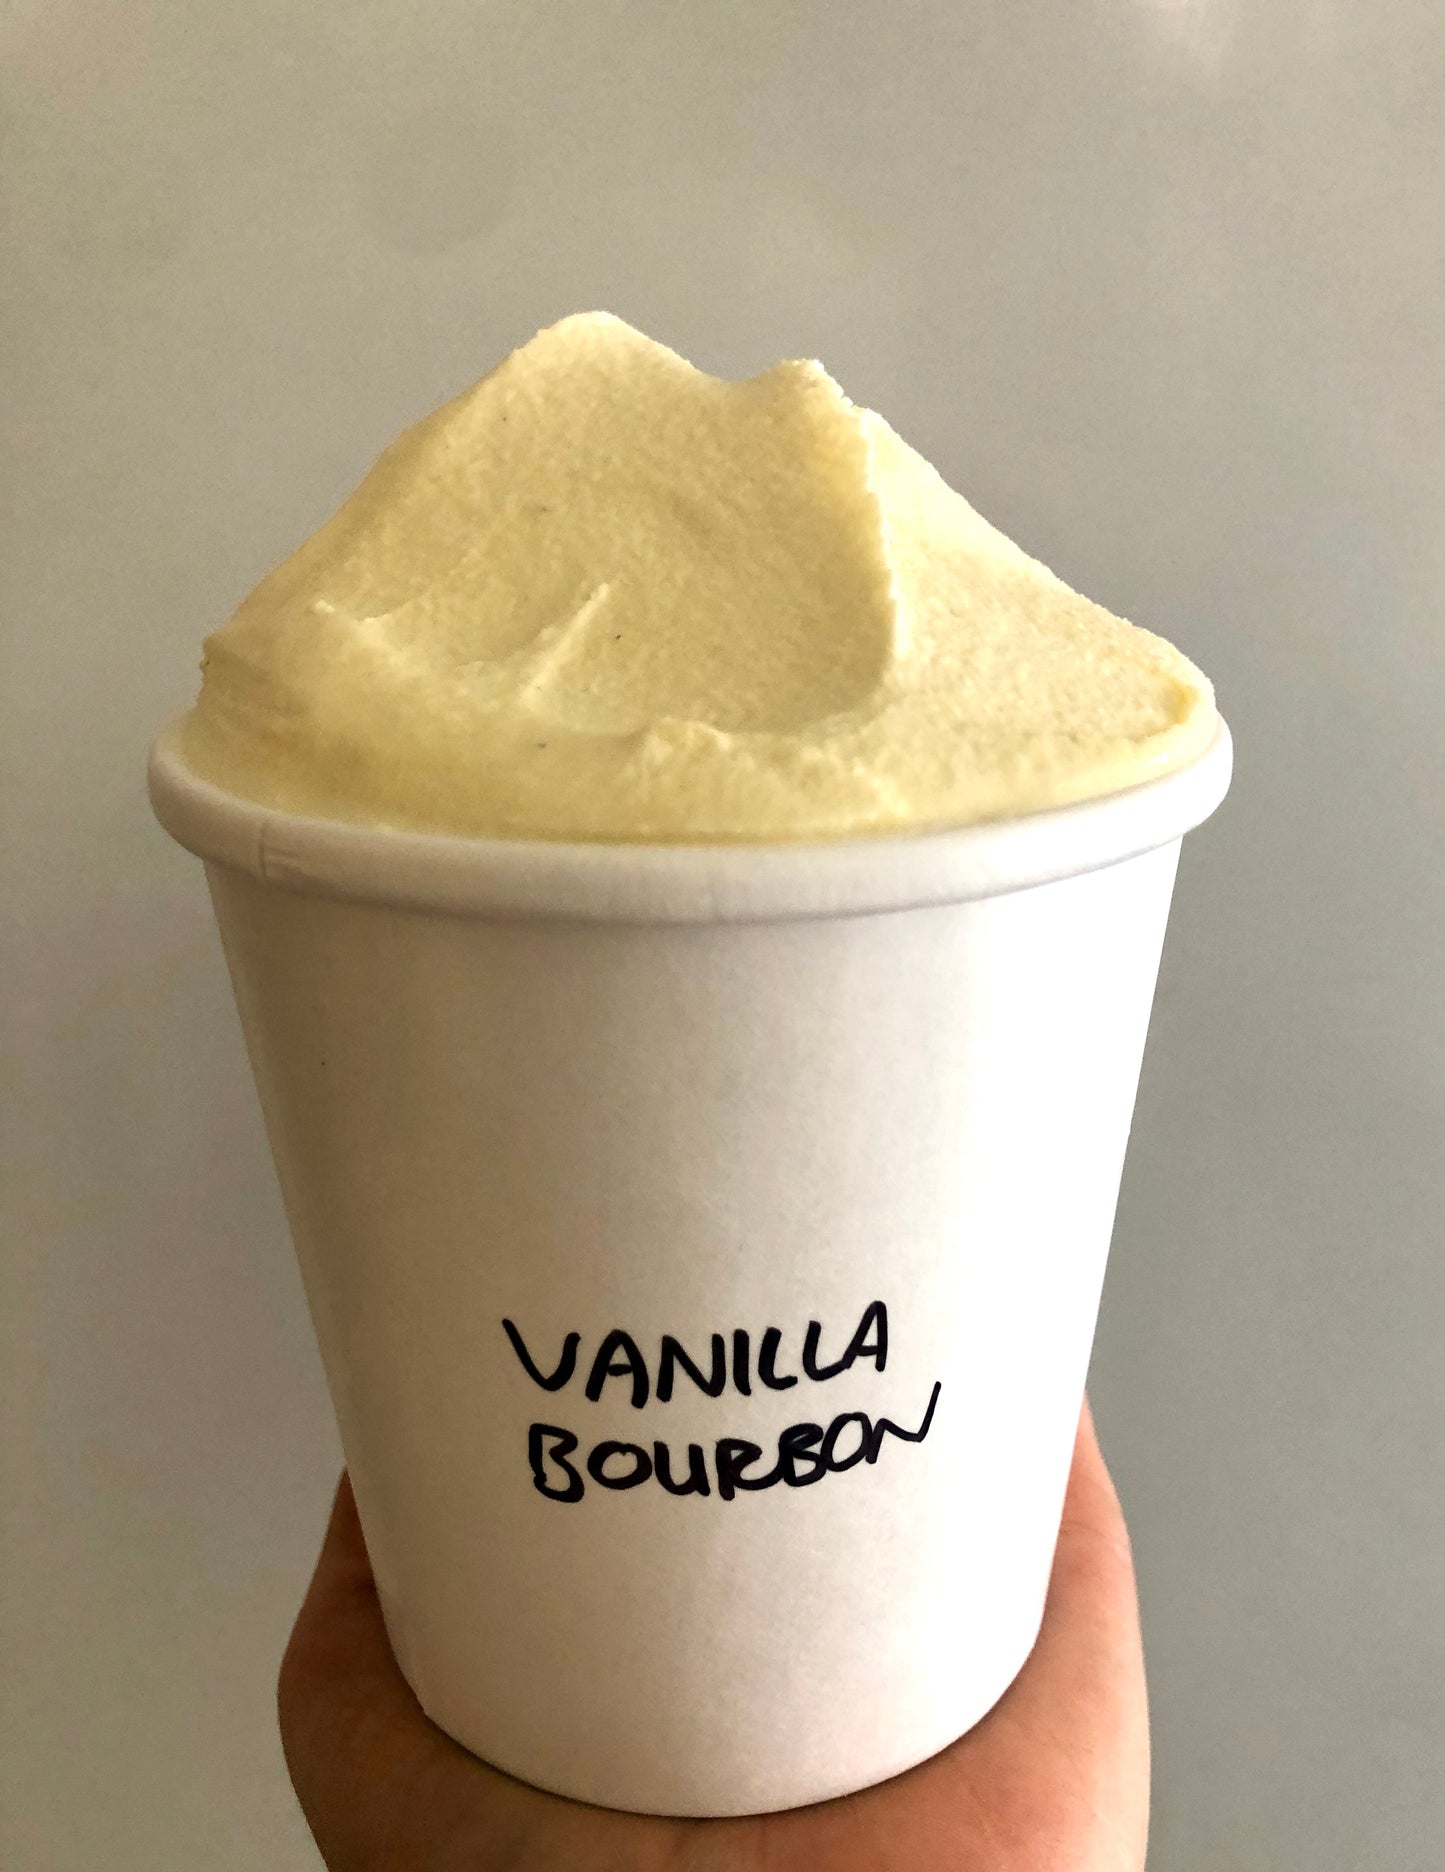 Vanilla Bourbon Ice Cream